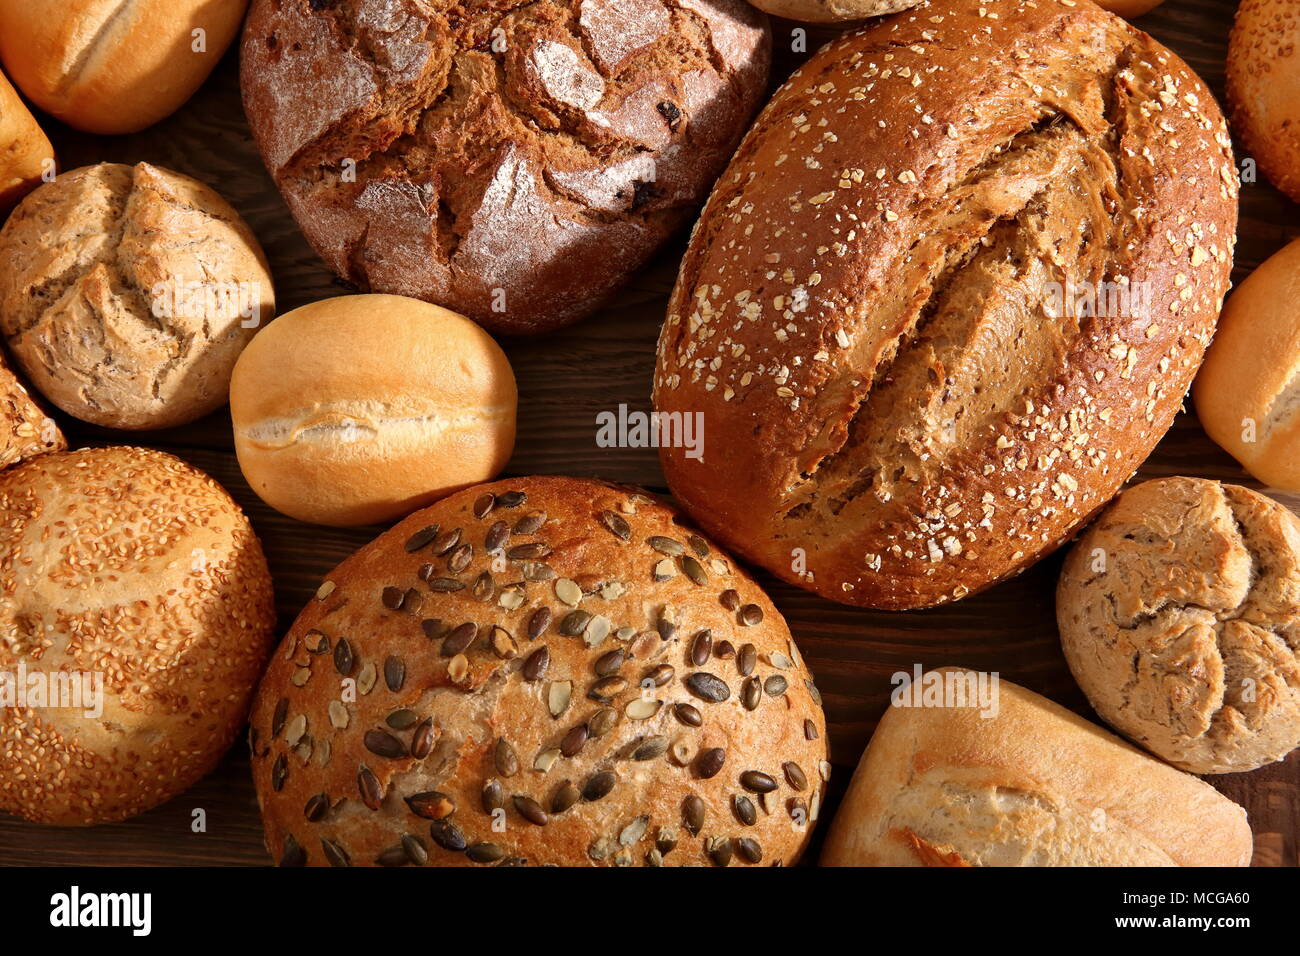 Pain et petits pains sont nombreuses sortes de pain, des saveurs et des formes qui peuvent être trouvés dans les magasins d'épicerie et de boulangerie non seulement en Pologne, mais aussi dans le monde. Banque D'Images